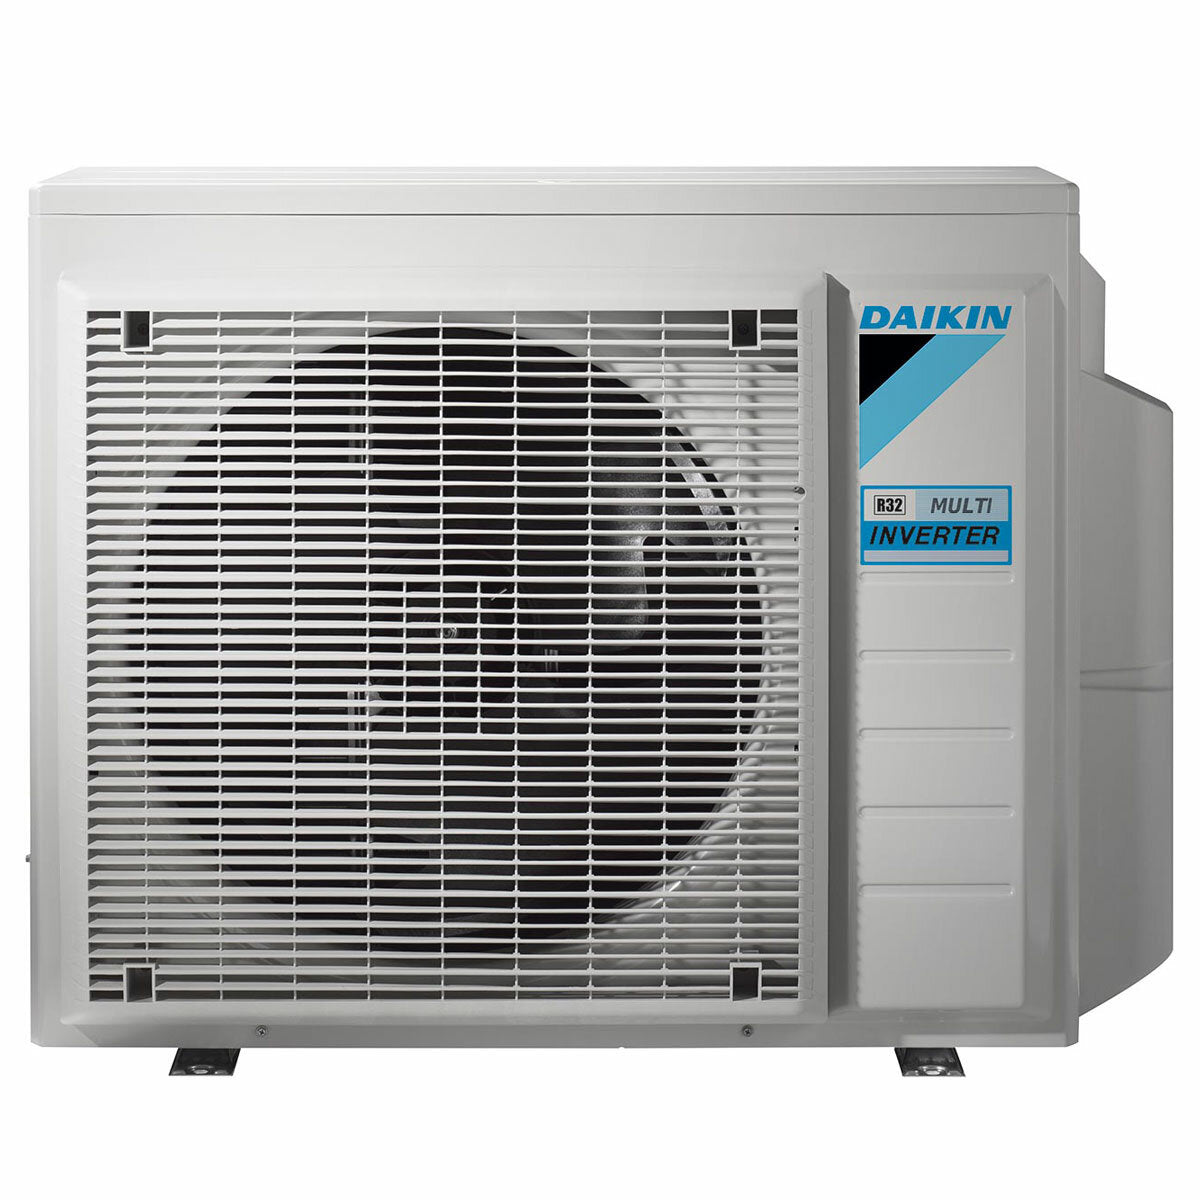 Daikin Emura air conditioner 3 split panels 7000+9000+9000+18000 BTU inverter A++ wifi outdoor unit 7.4 kW Silver